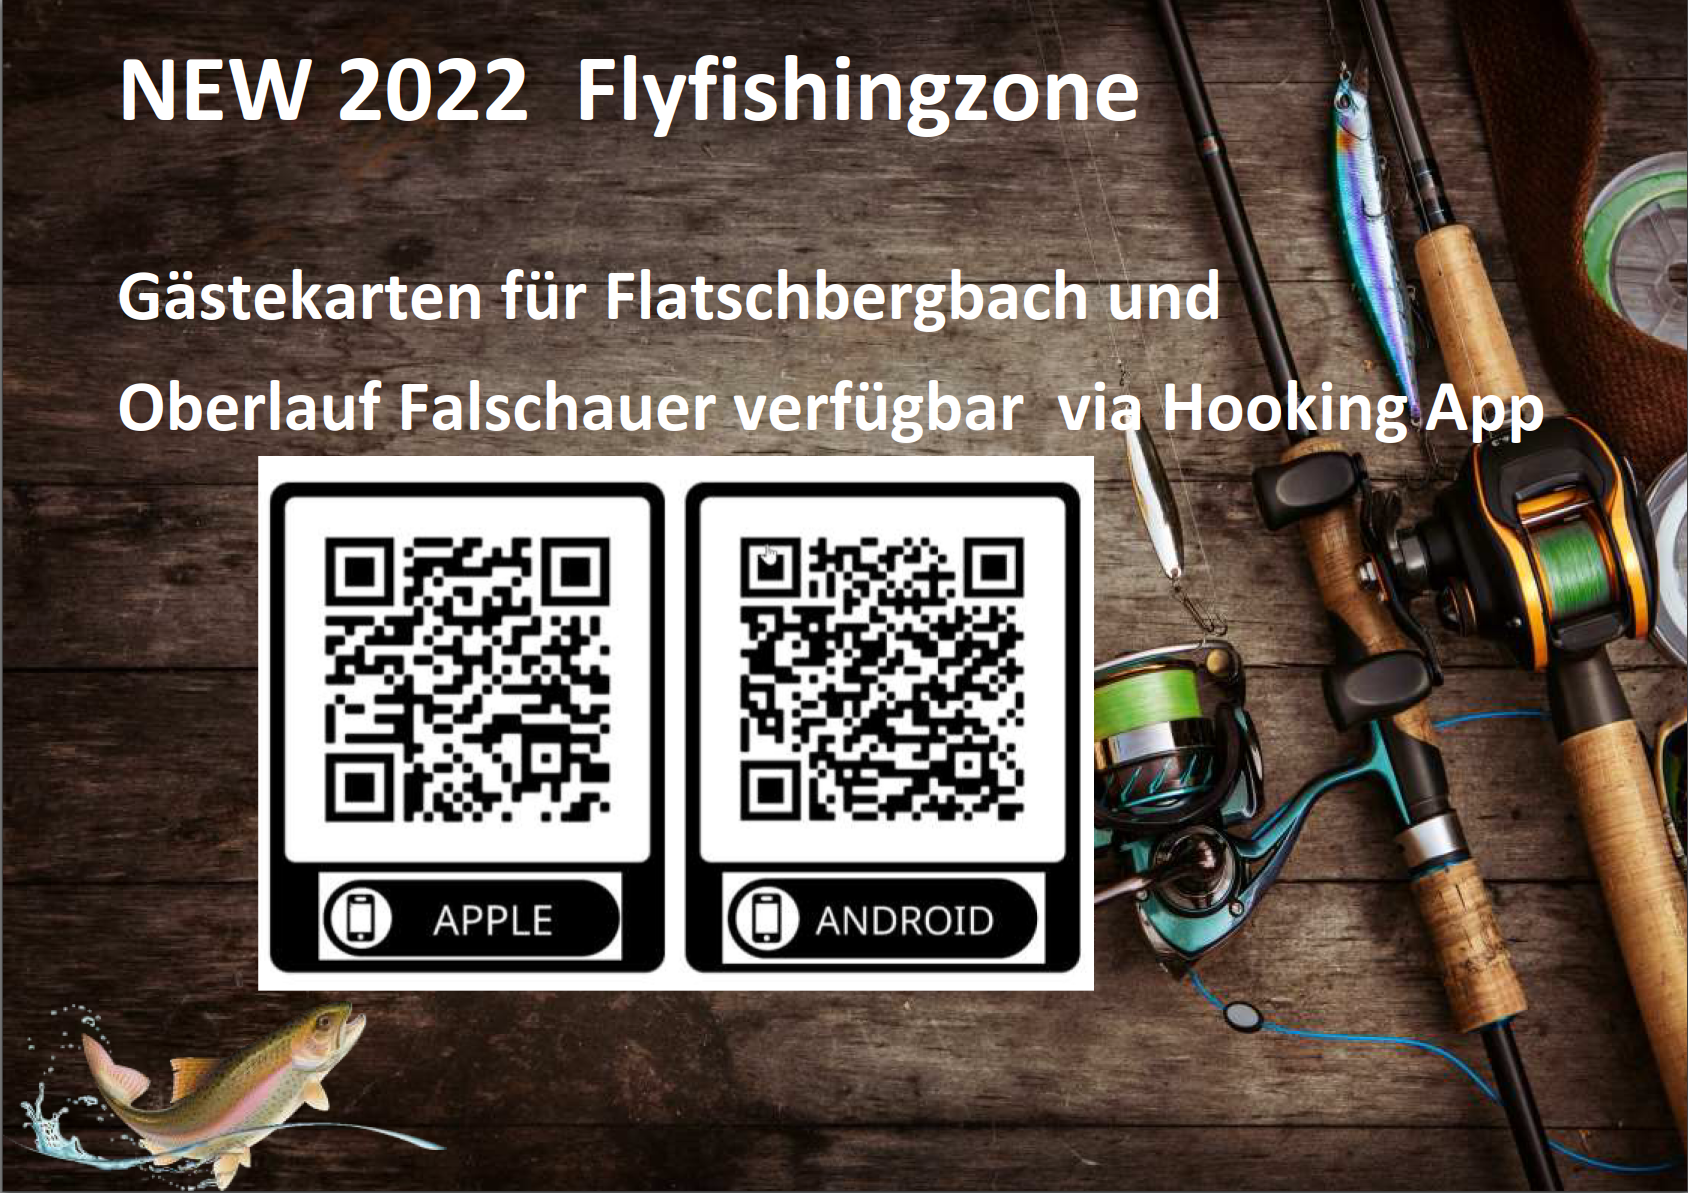 NEW 2022 Gästekarten Fliegenfischerzone Flatschberg / Oberlauf Falschauer